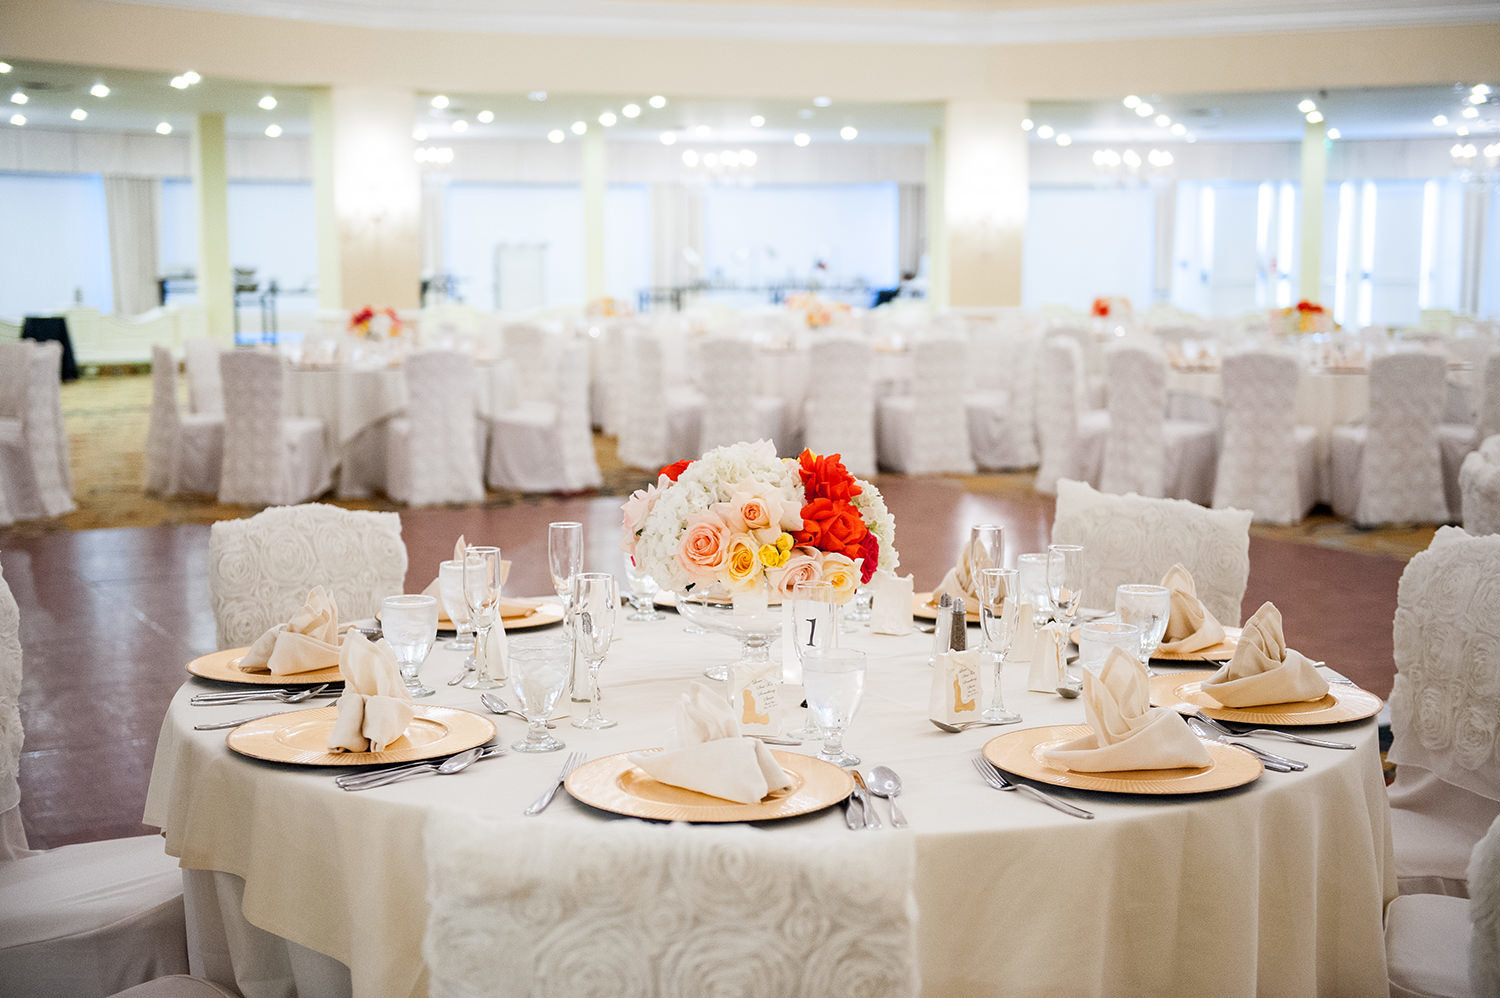 Hotel Del Coronado wedding reception table settings